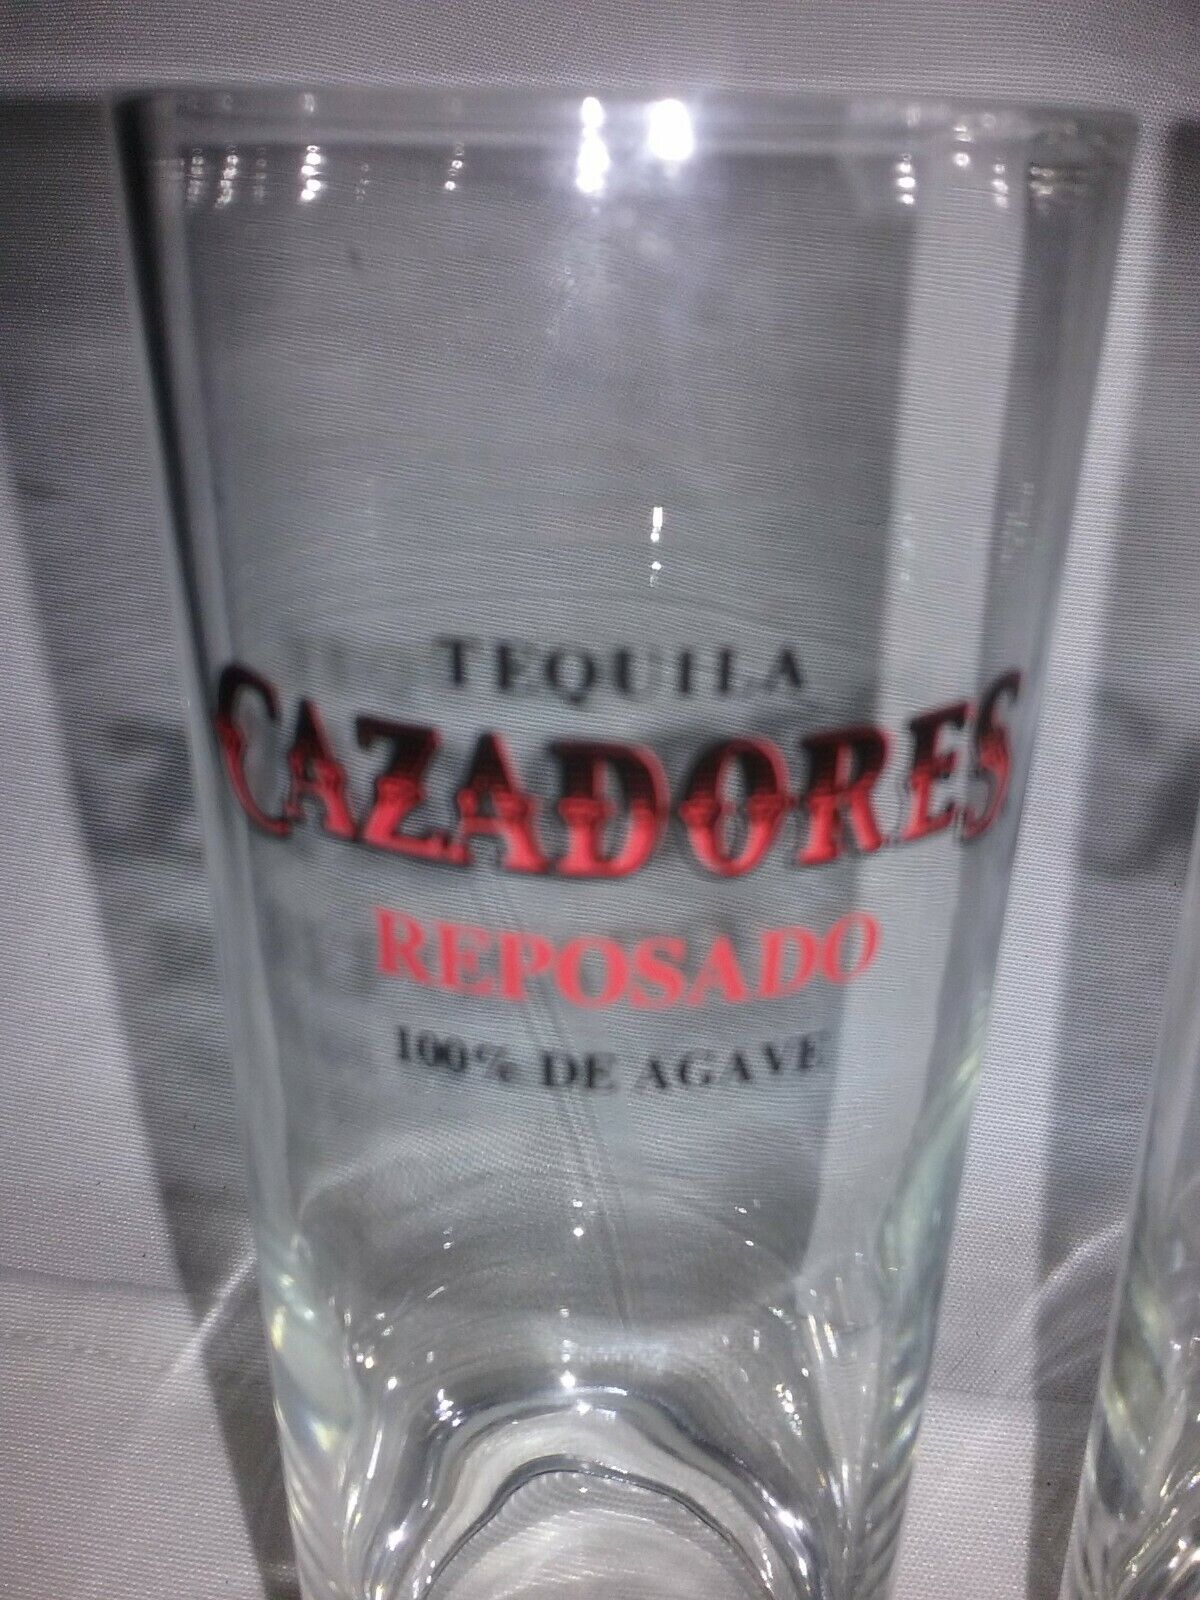 Set of 2  Liquor GLASSES CAZADORES Reposado 100% De Agave Mexico Tequila Est1870 Cazadores Reposado - фотография #2